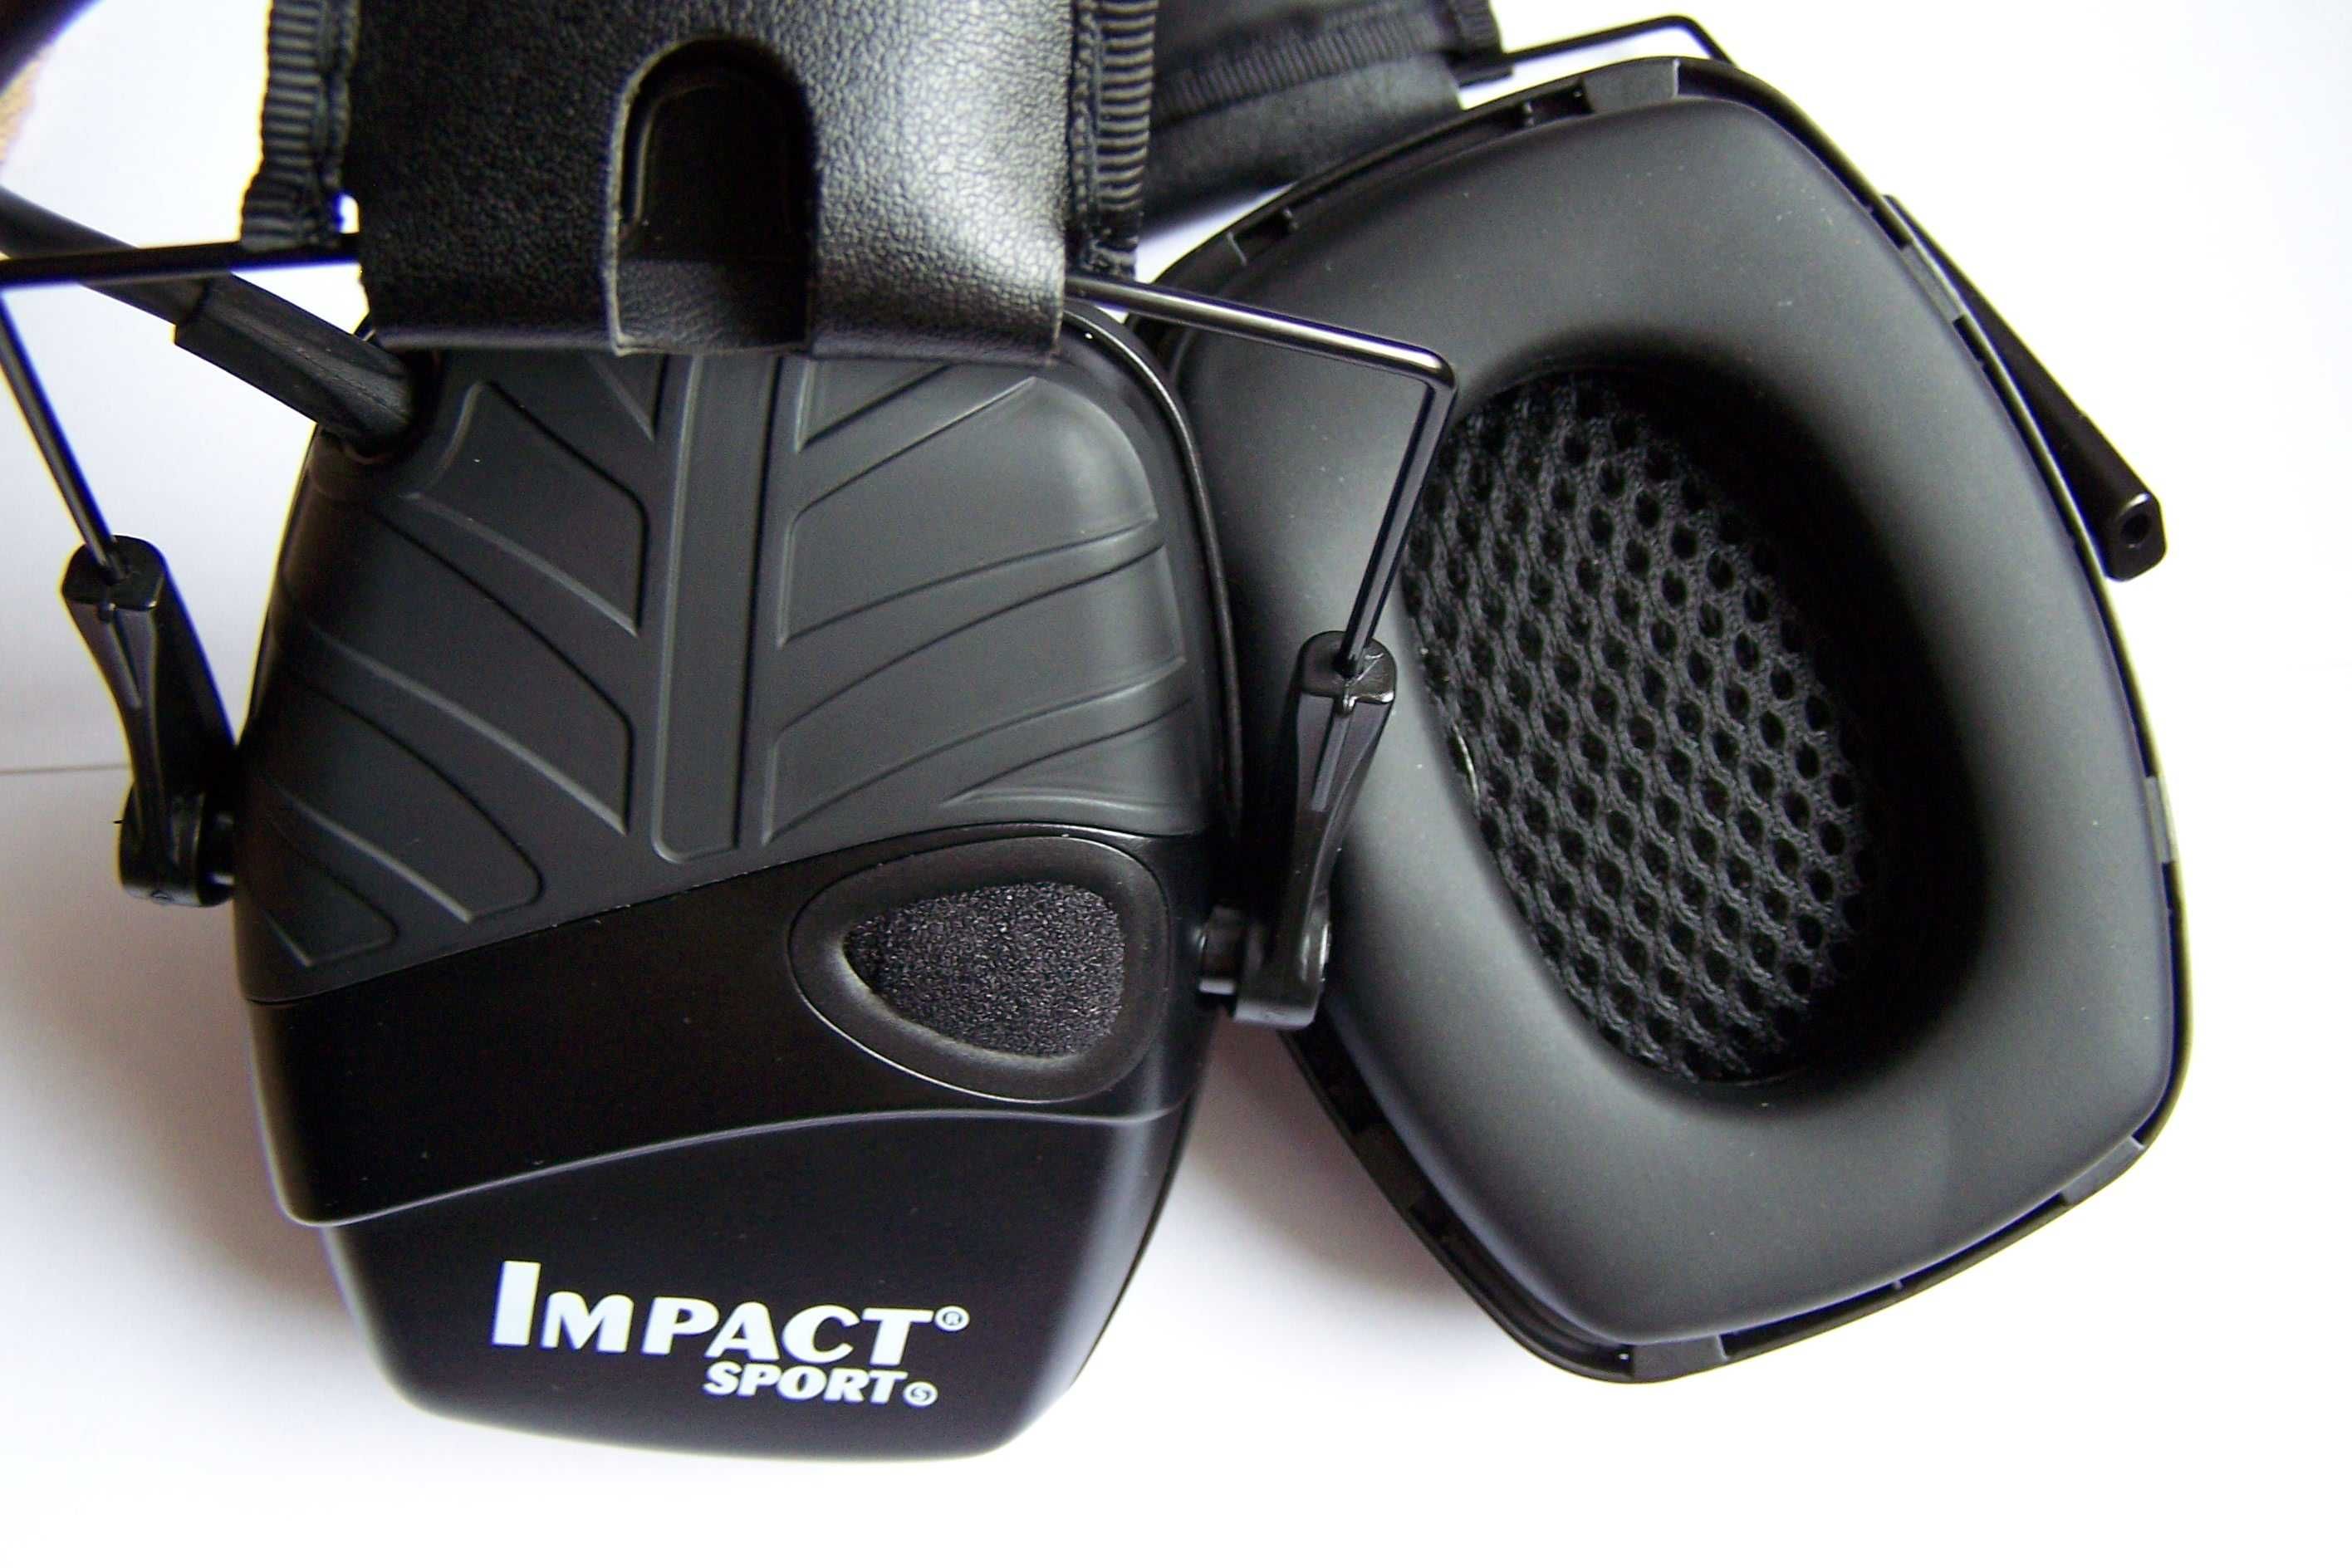 Taktyczne nauszniki Impact wzmacniające dźwięk i chroniące słuch